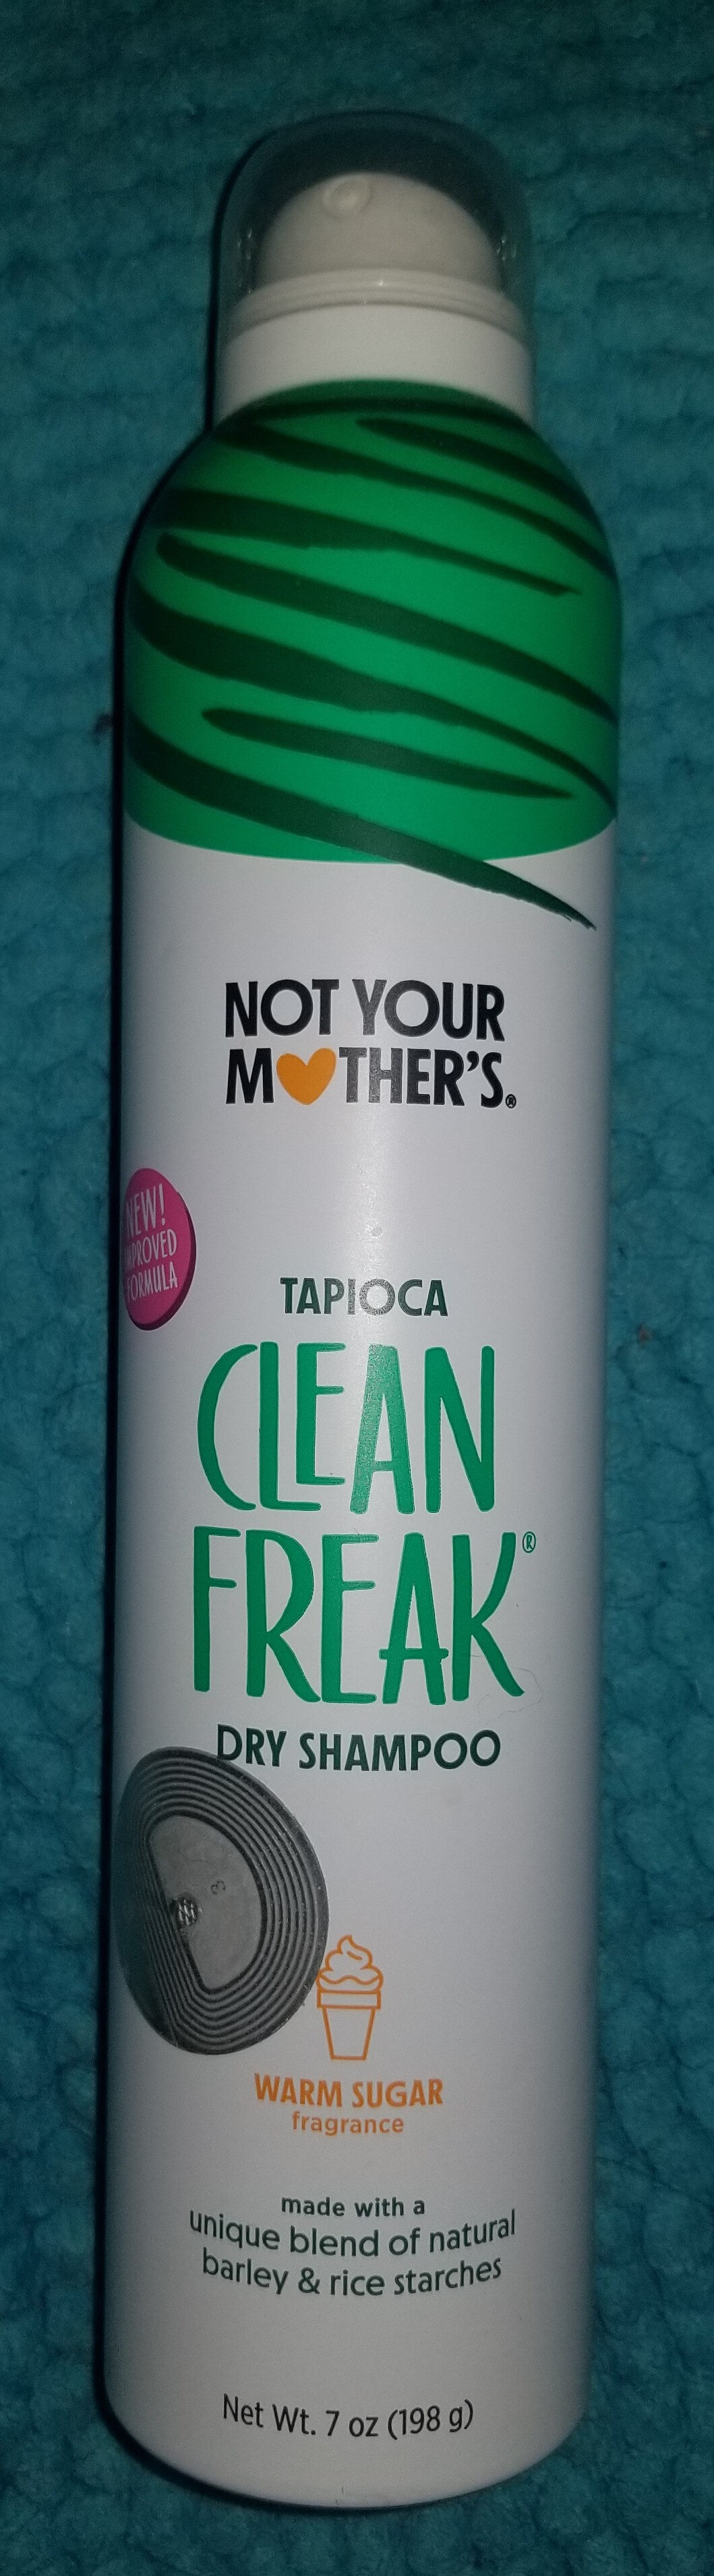 Clean Freak Tapioca Dry Shampoo - Produto - en